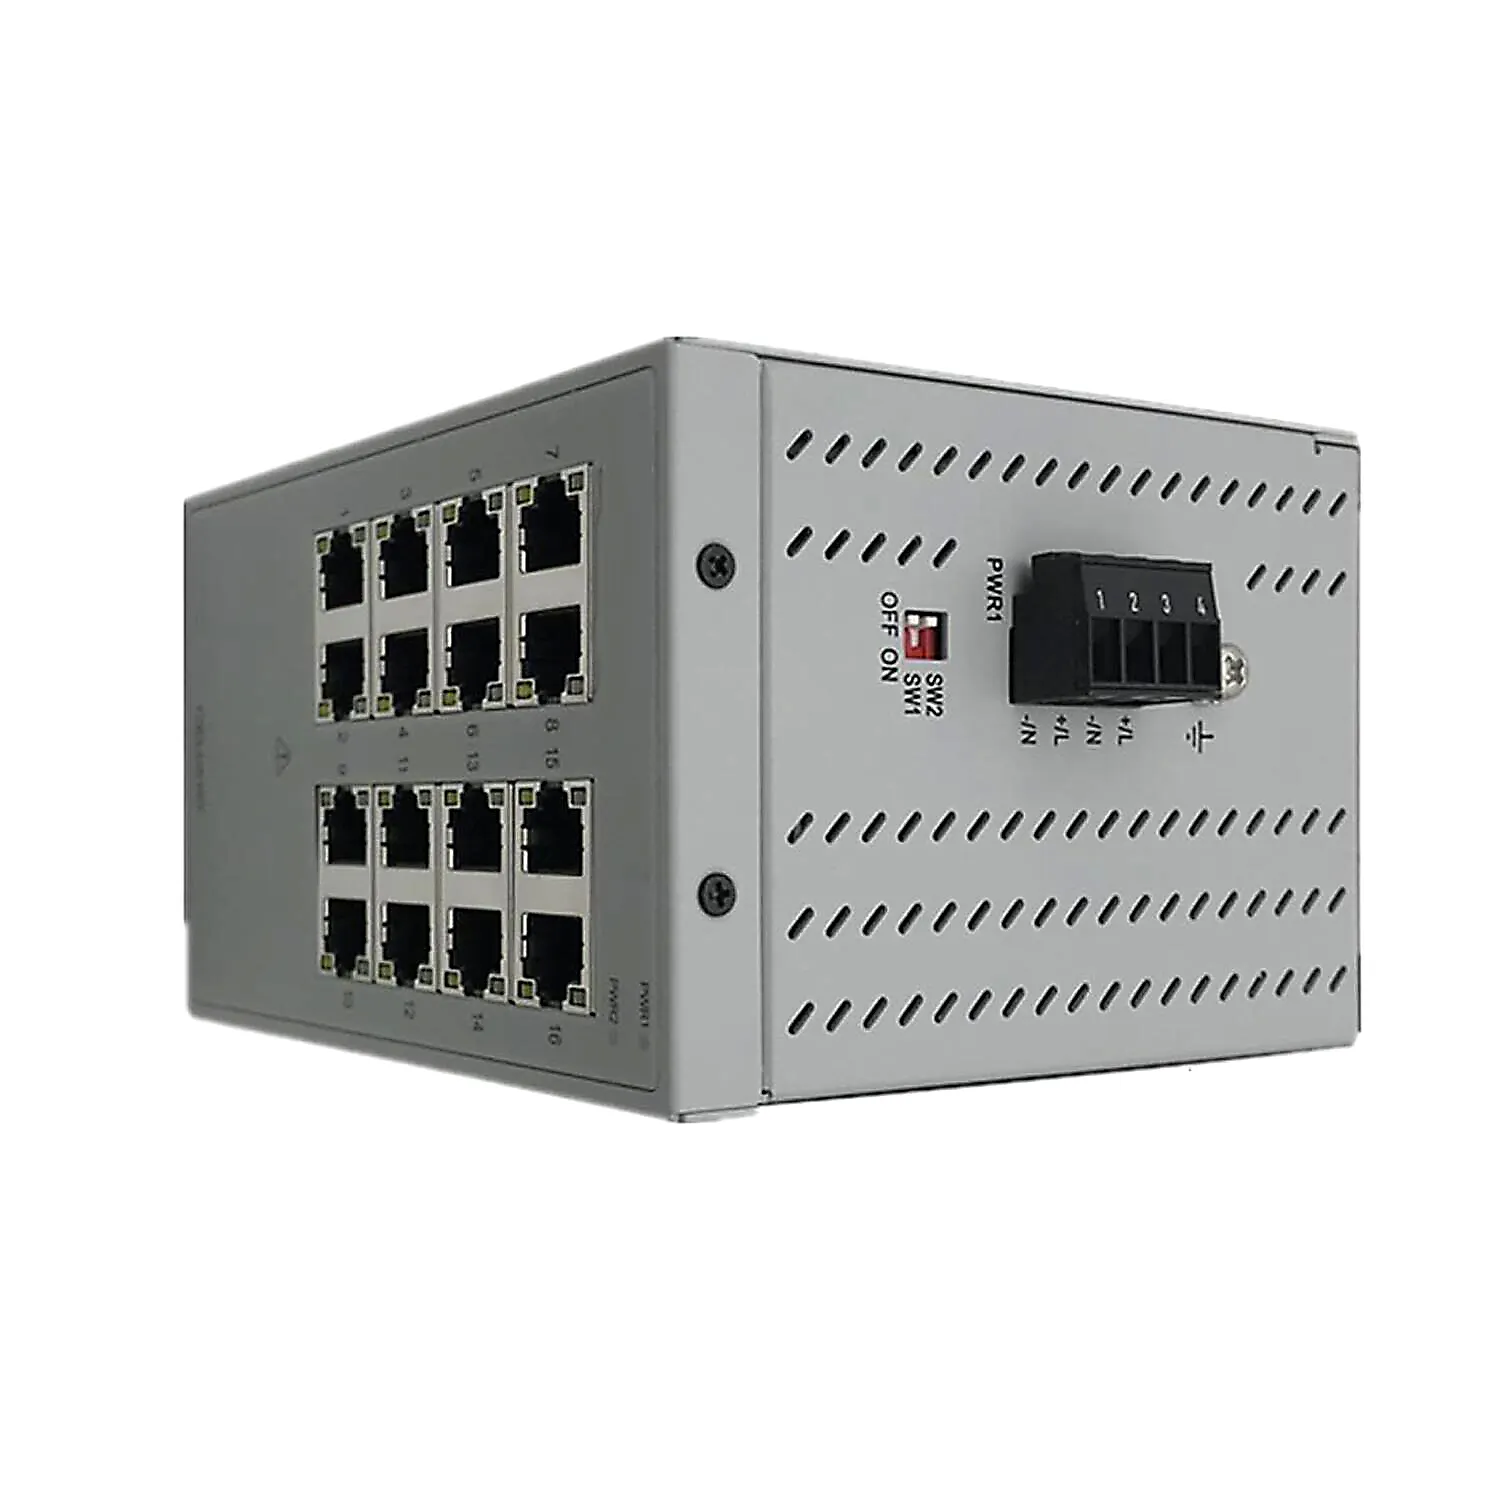 Em estoque 20 COMM-M Módulo PLC Modbus/TCP Adaptador 20-COMM-M selado de fábrica para todas as séries